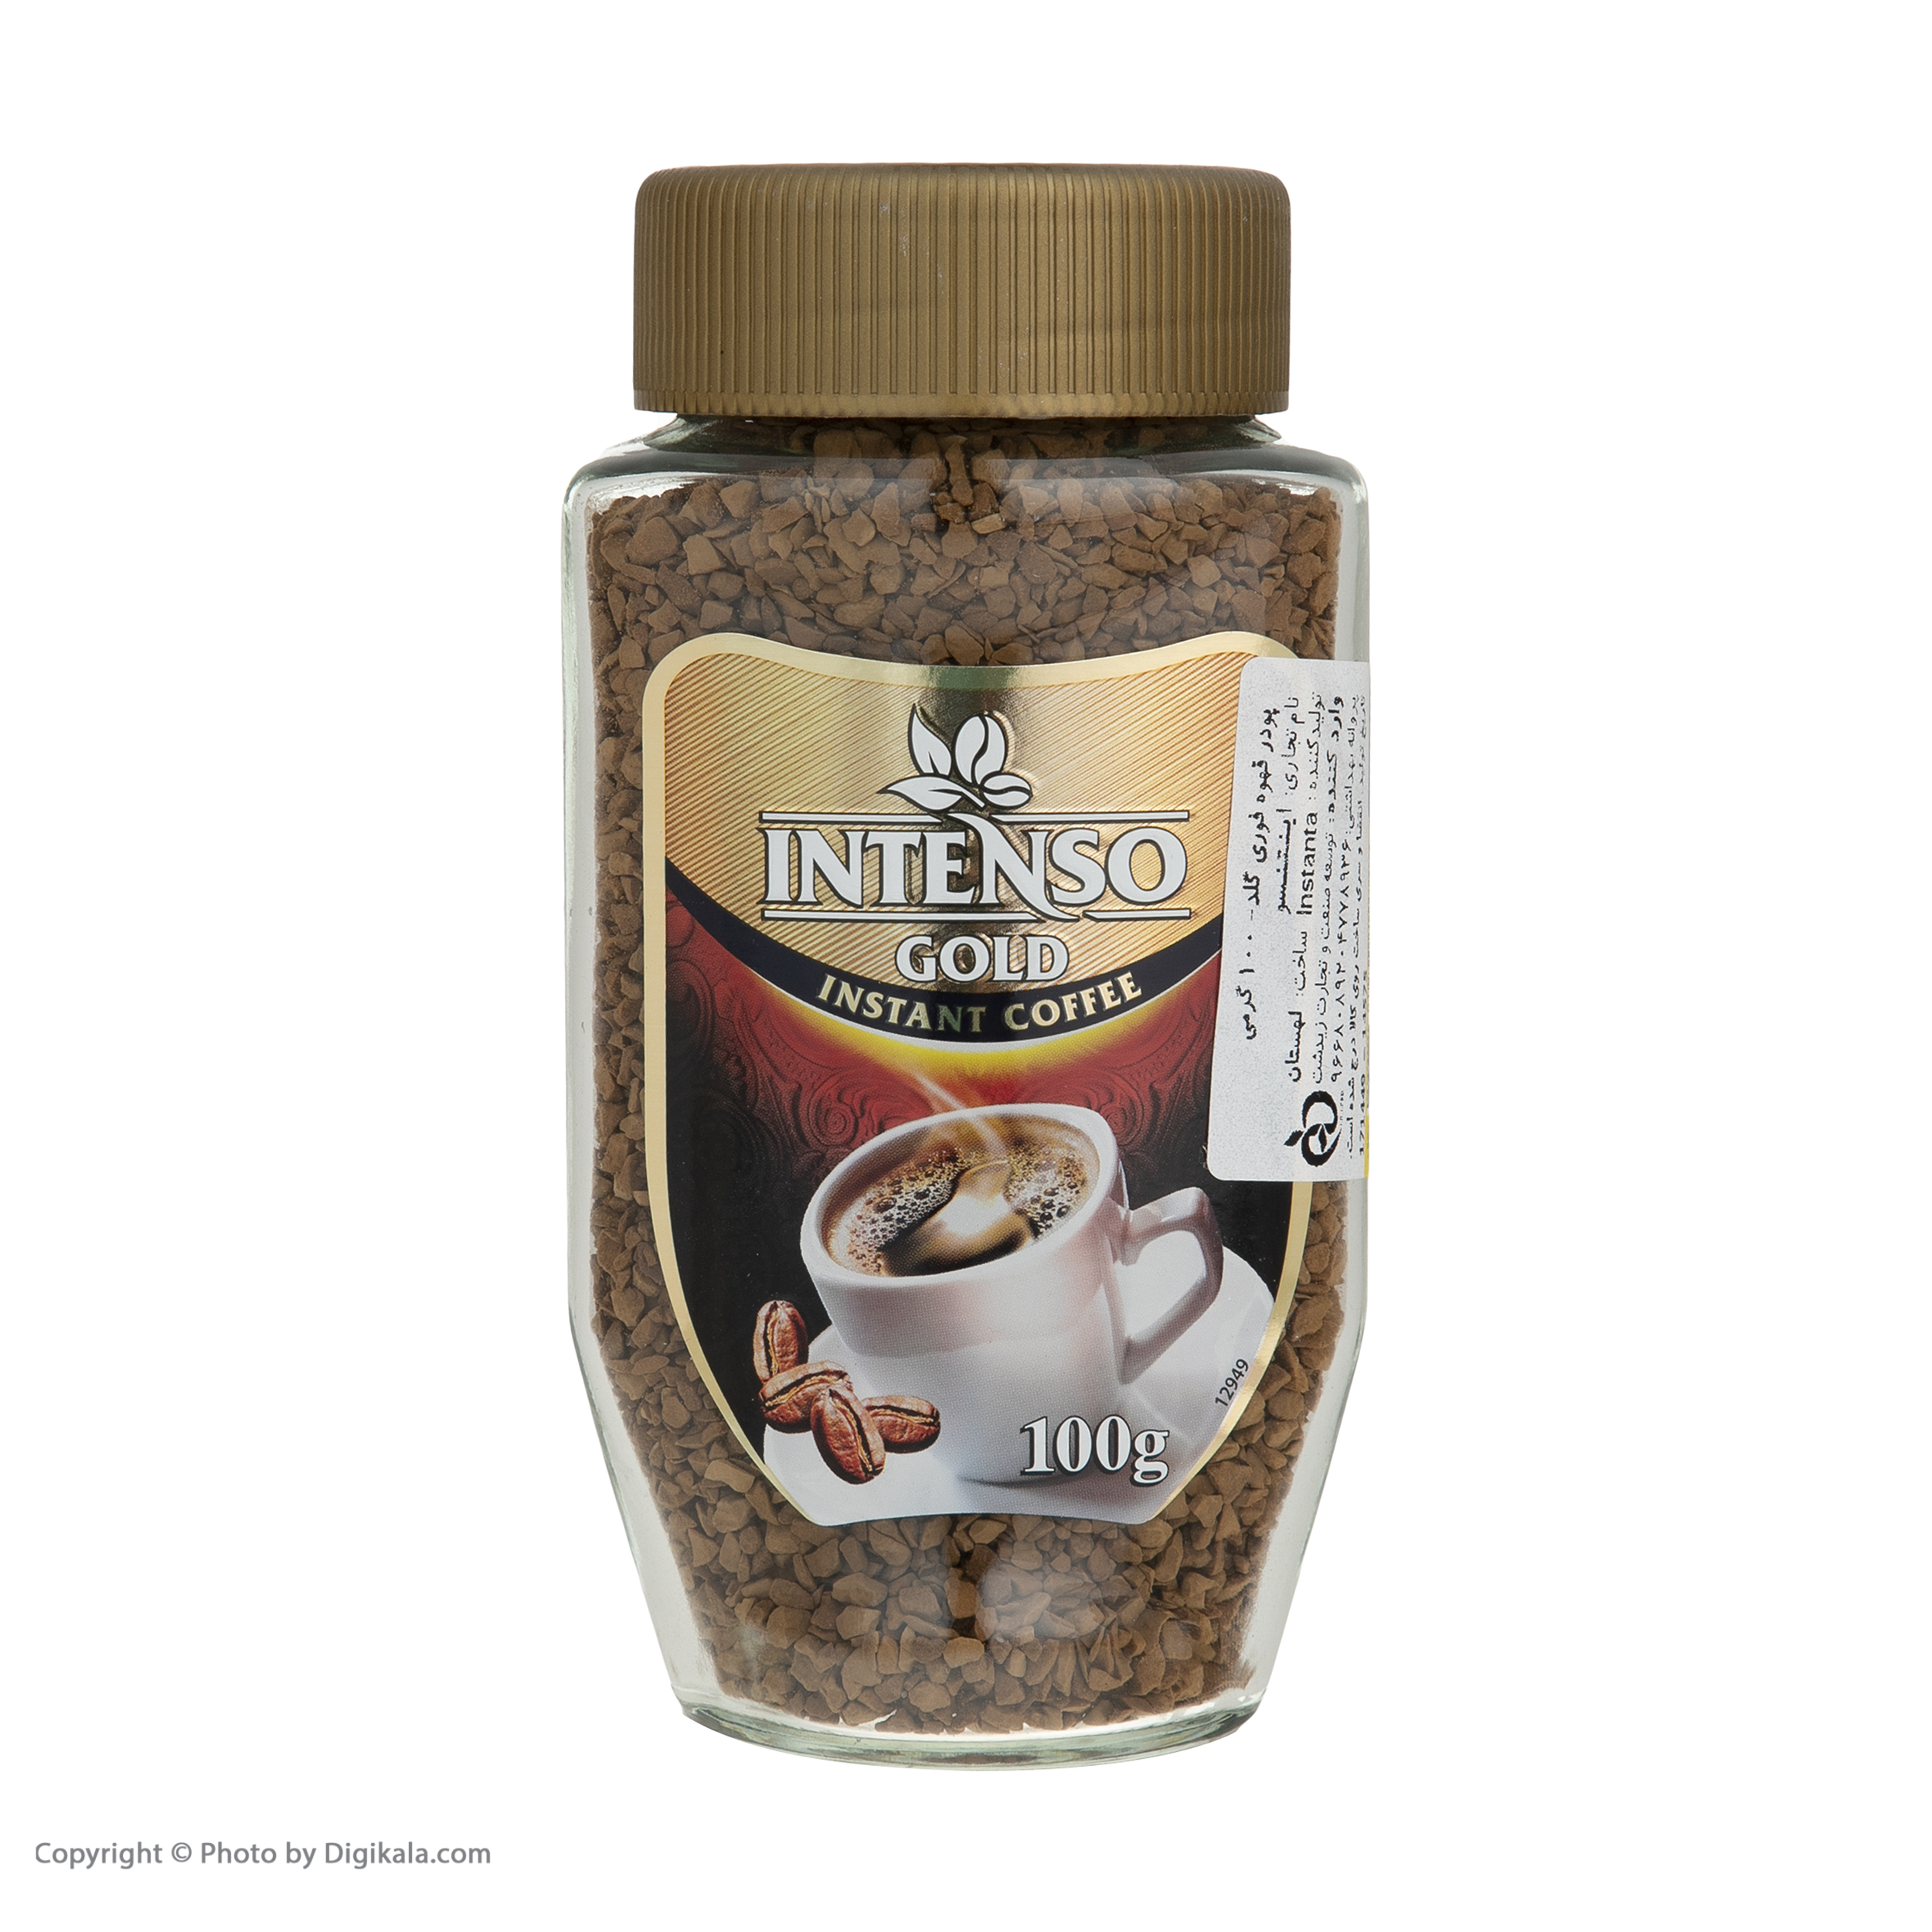 پودر قهوه فوری گلد اینتنسو - 100 گرم